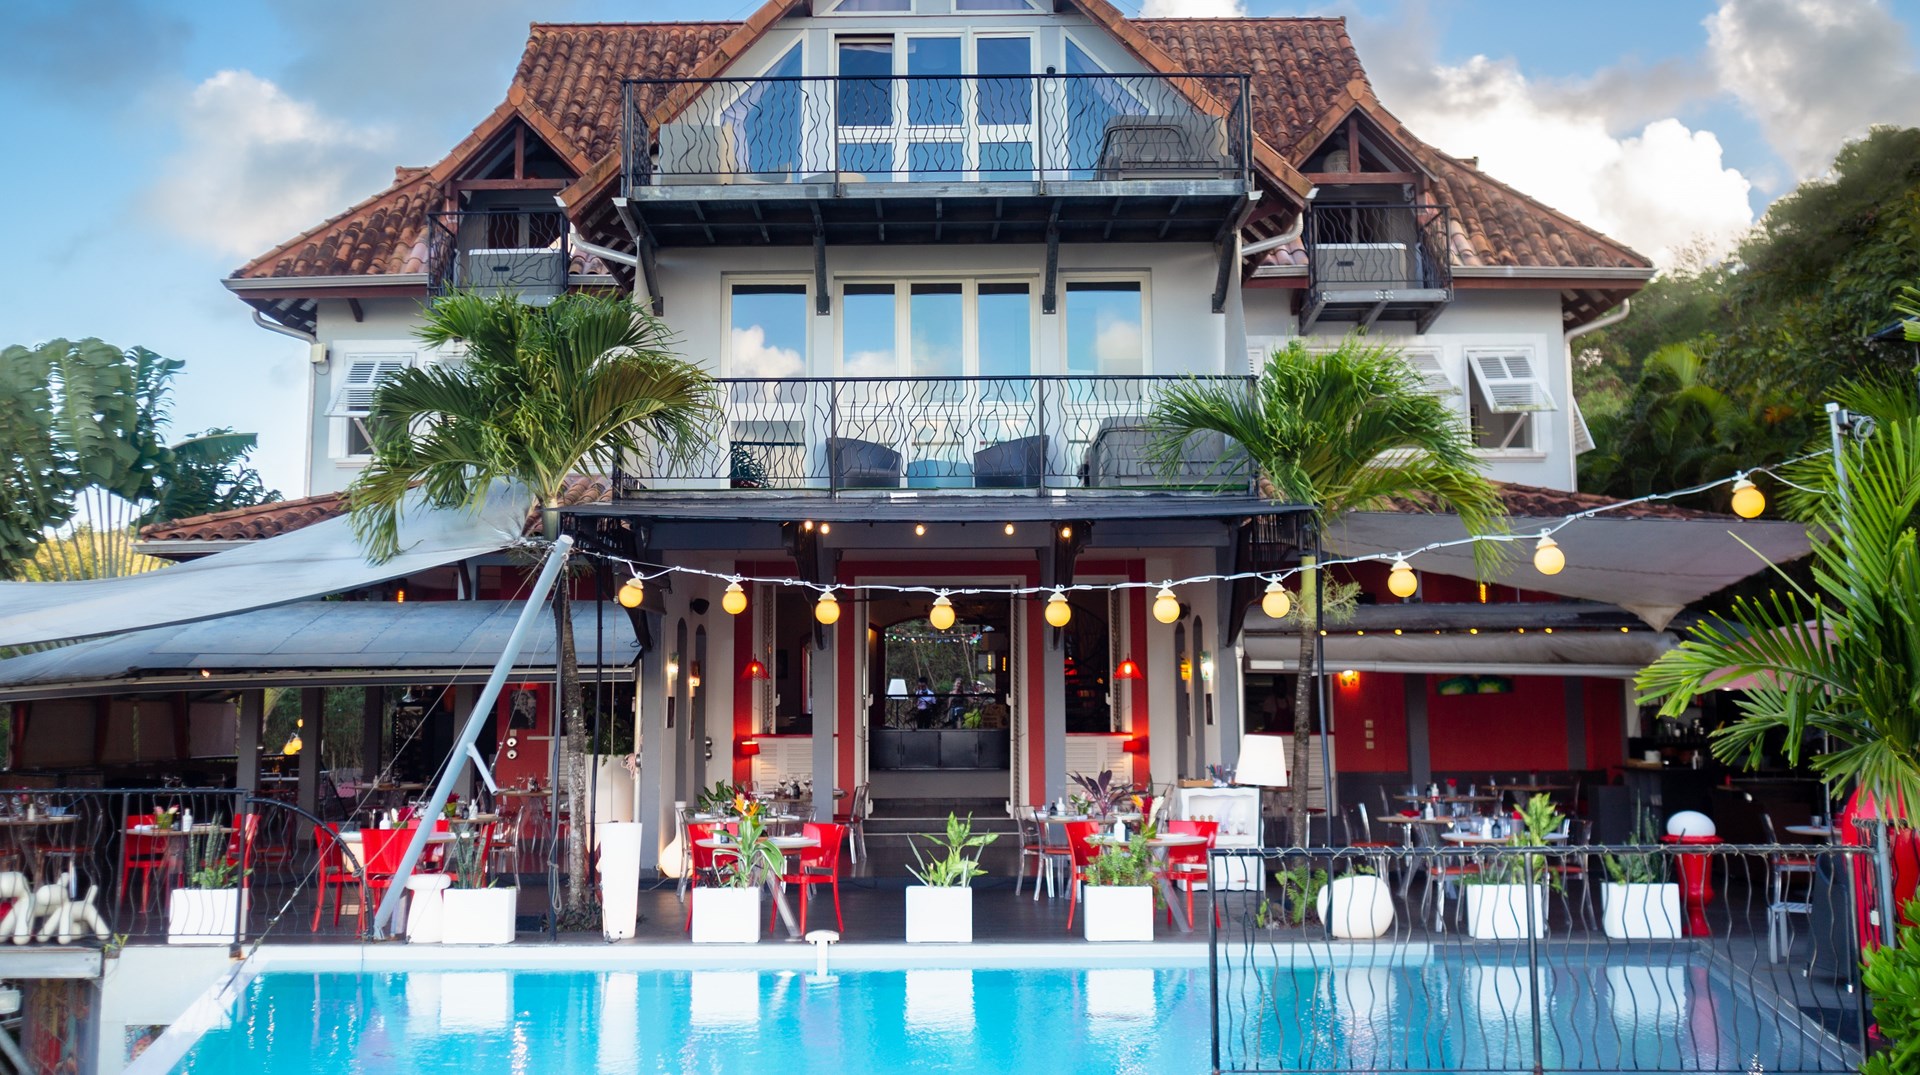 Met op elke terras een jacuzzi om optimaal van het uitzicht te genieten La Suite Villa Hotel & Spa